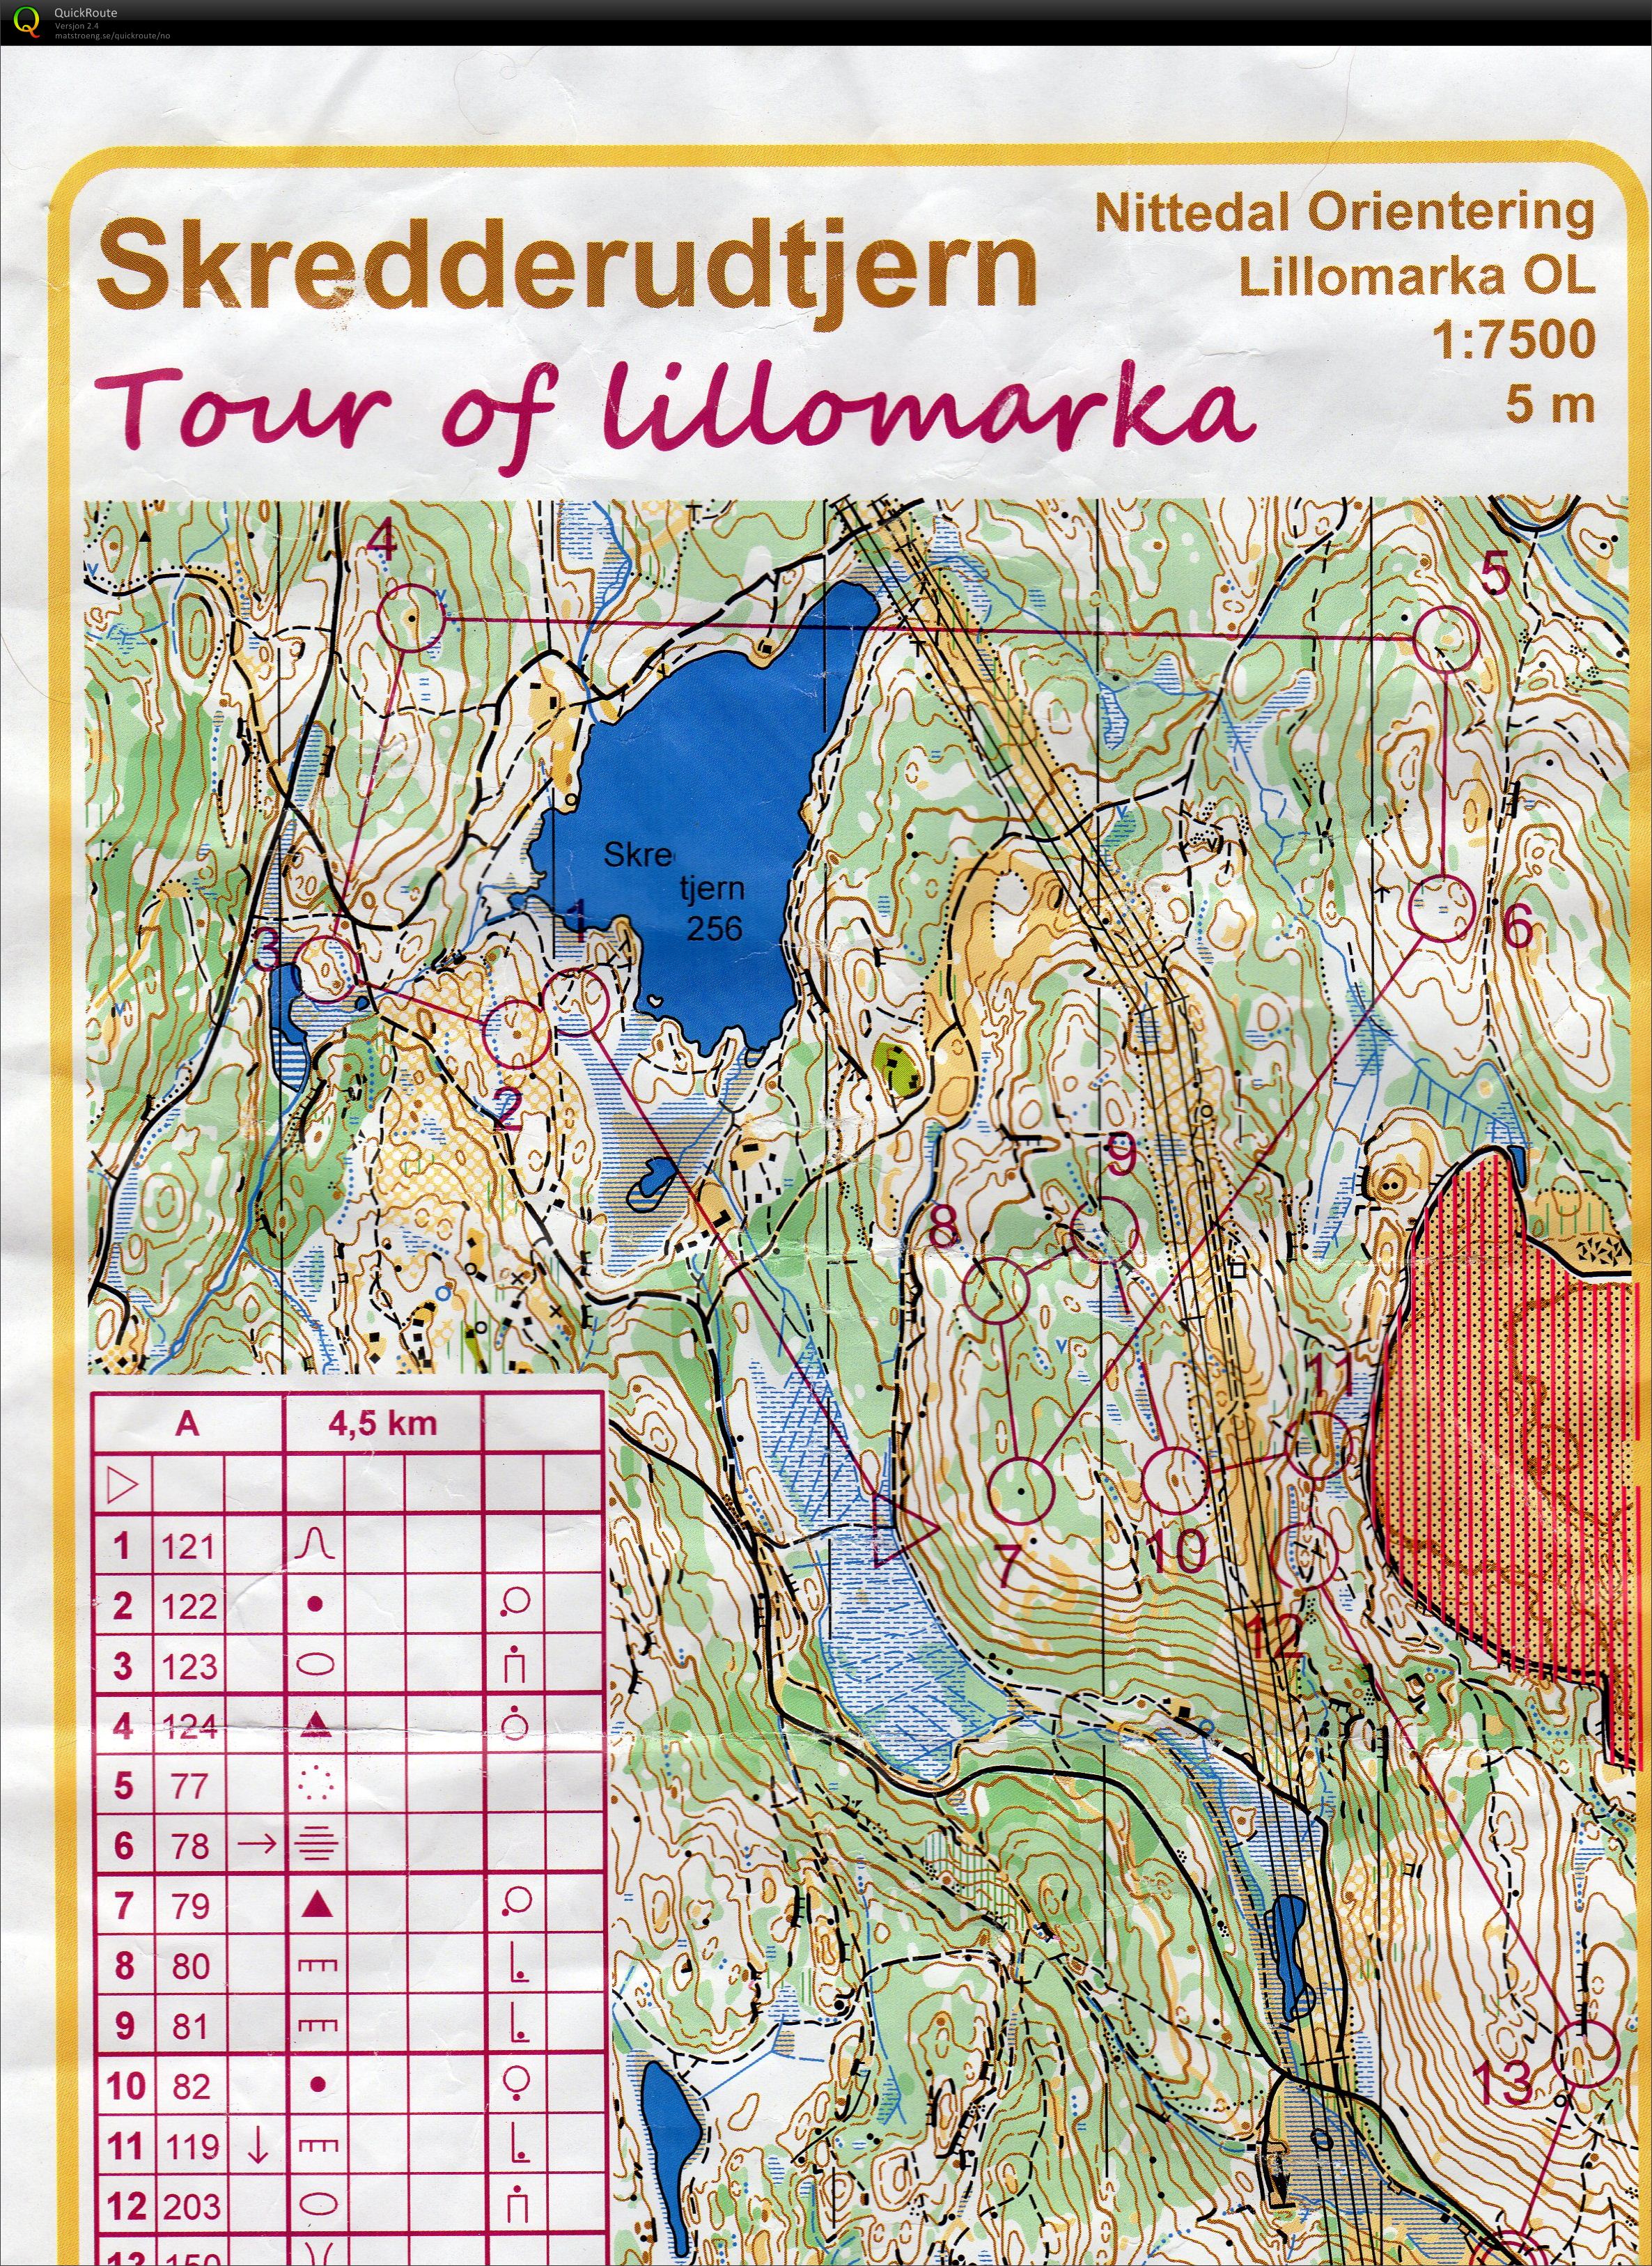 Tour of Lillomarka 7 2015 (08/06/2015)